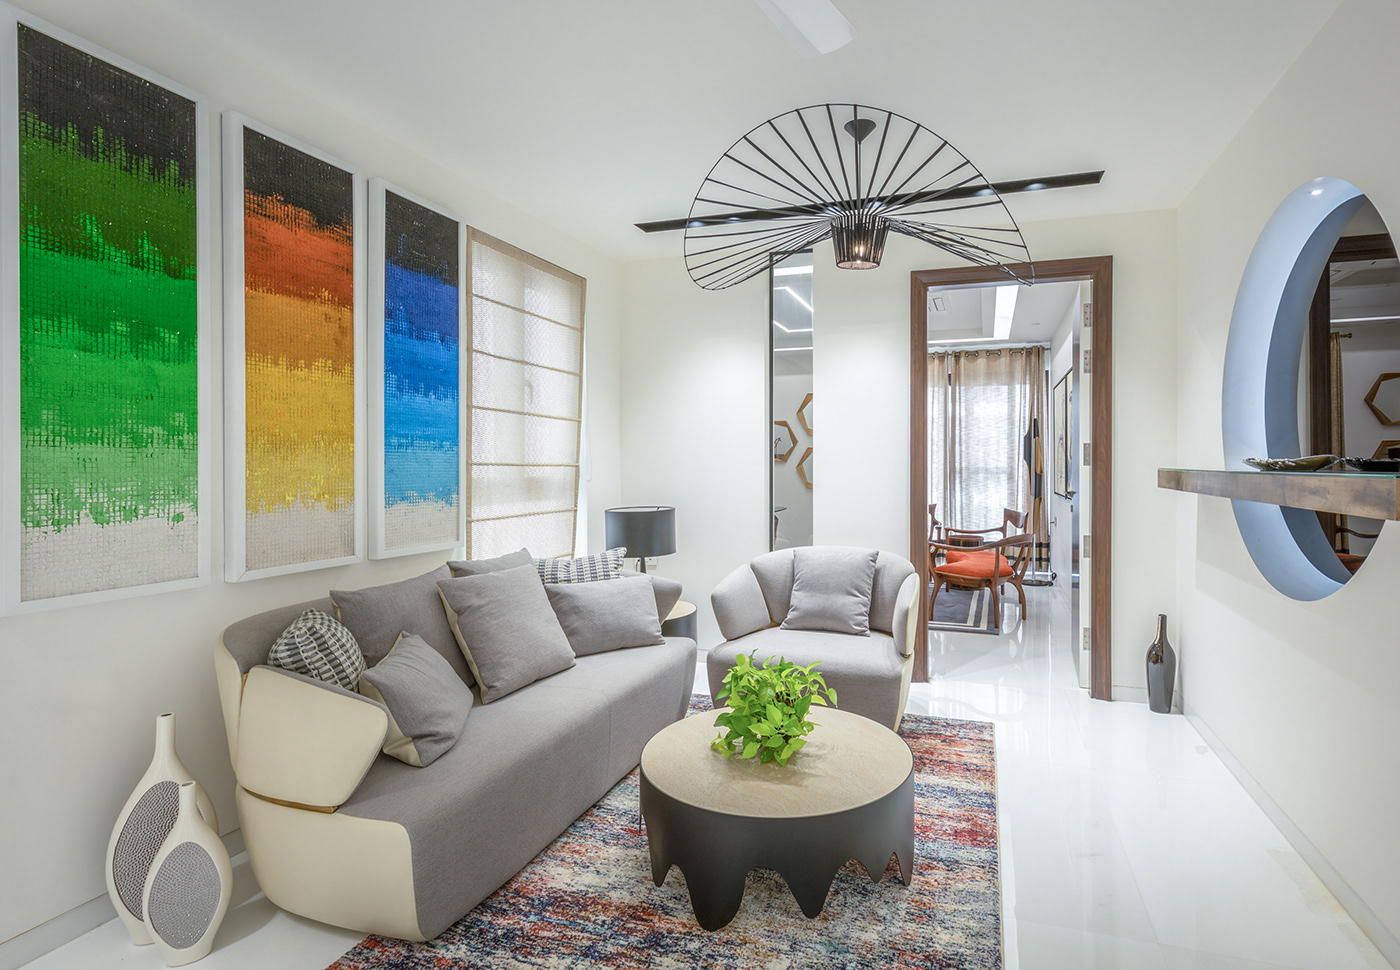 India interiors penthouse premium luxury design Space  lifestyle